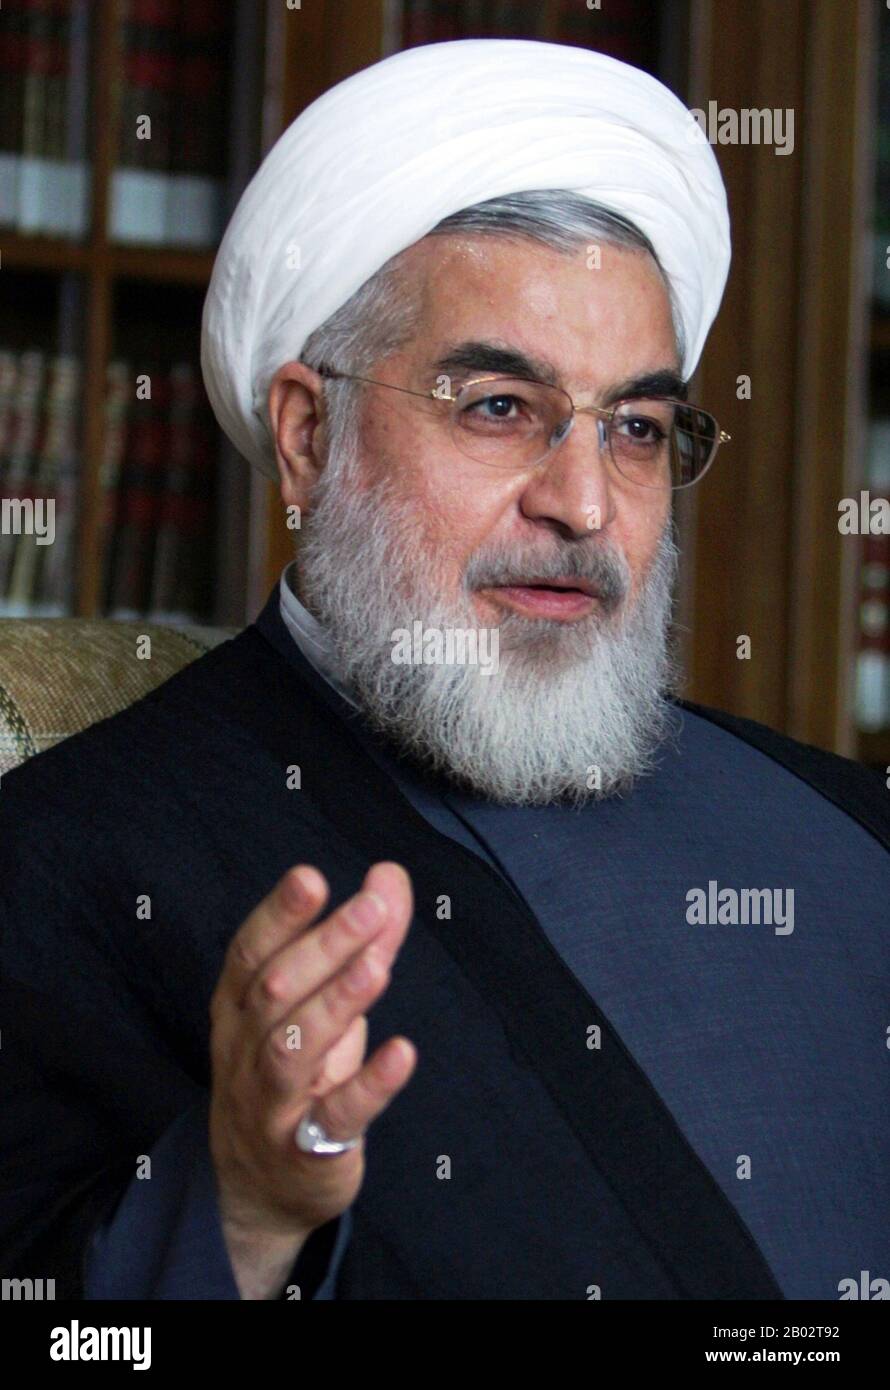 Hassan Rouhani è il settimo presidente dell'Iran, in carica dal 2013. È anche un ex legislatore, accademico e diplomatico. Dal 1999 è membro dell'Assemblea degli esperti iraniani, membro del Consiglio Di Convenienza dal 1991, e membro del Consiglio di sicurezza nazionale supremo dal 1989. Foto Stock